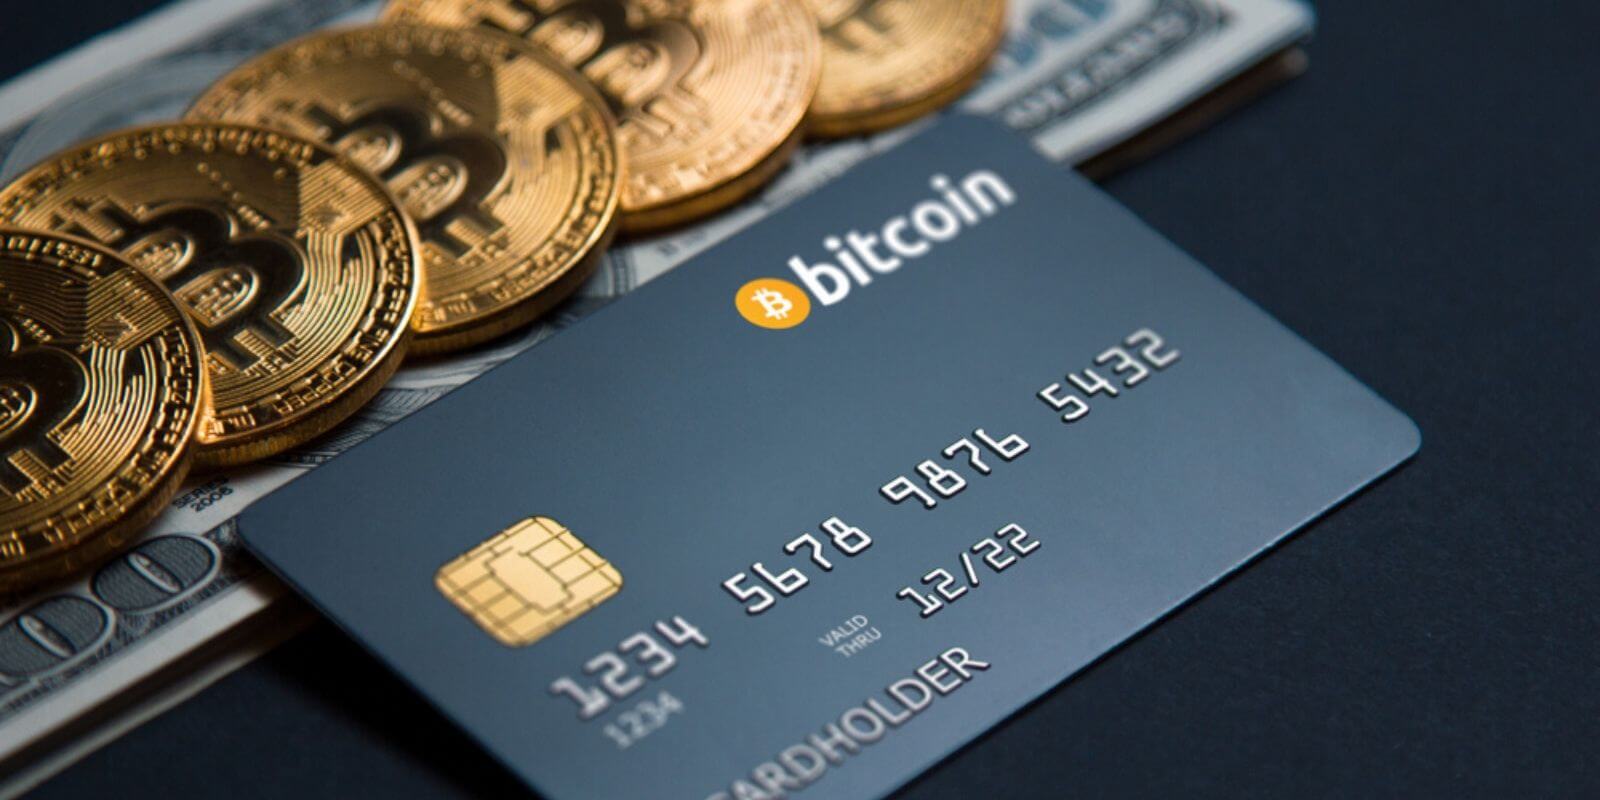 acheter bitcoin par carte bancaire sans verification